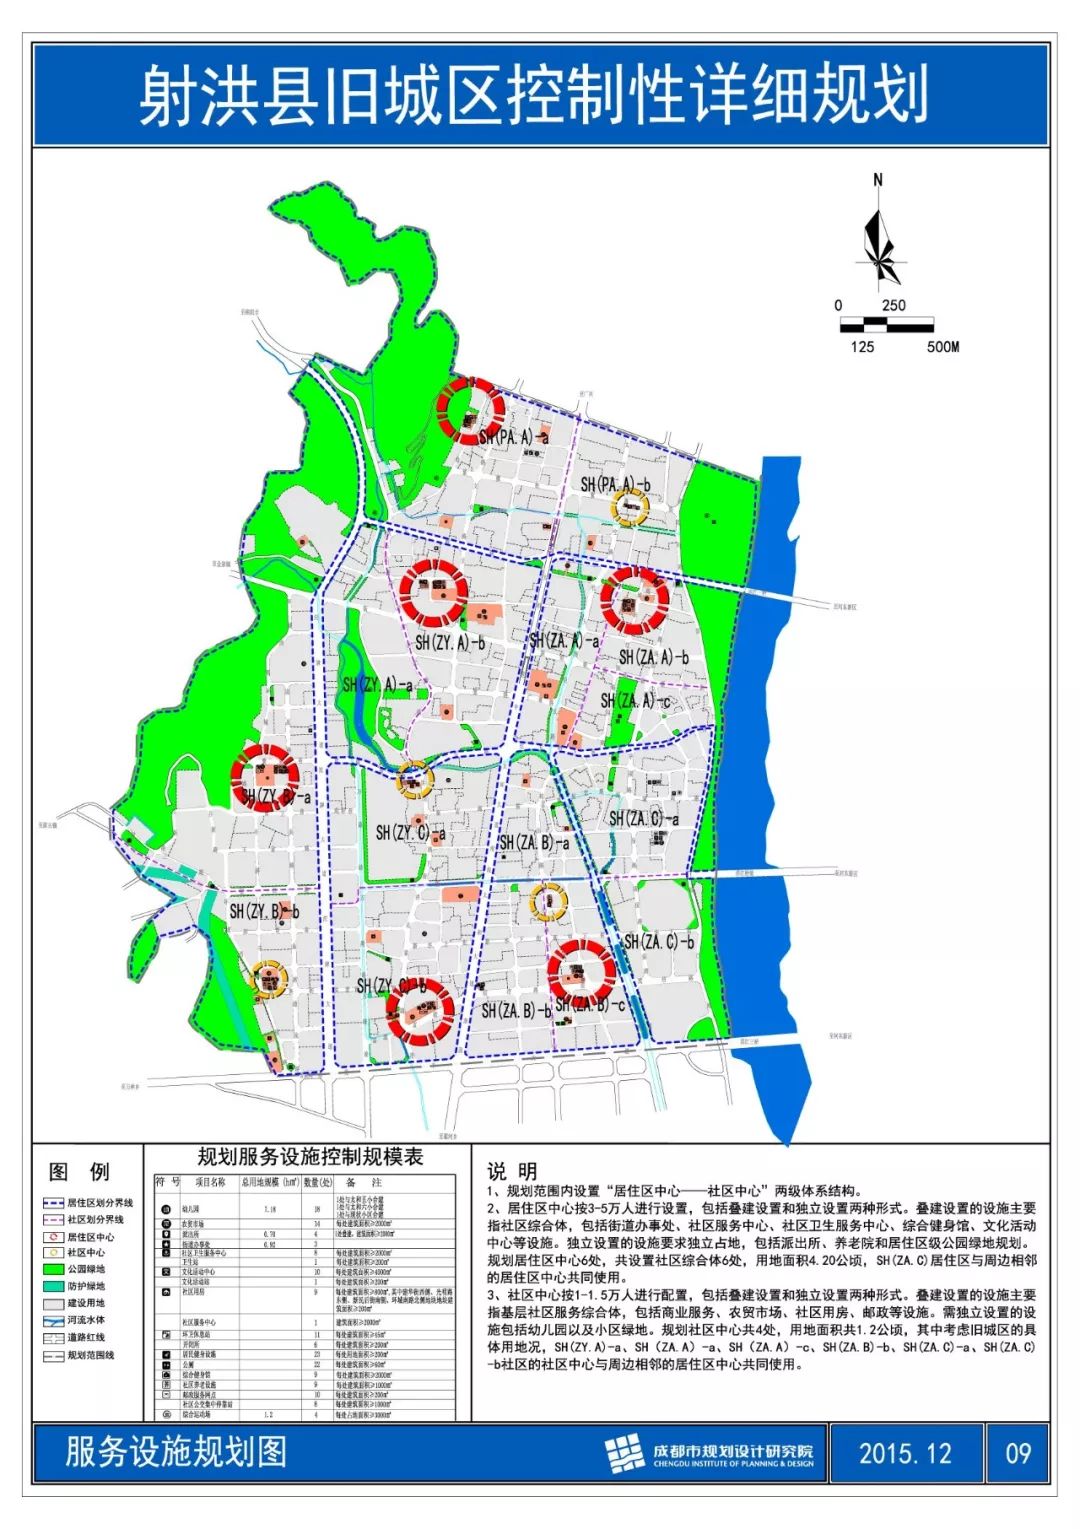 射洪县旧城区控制性详细规划出炉,正在征求社会各界意见